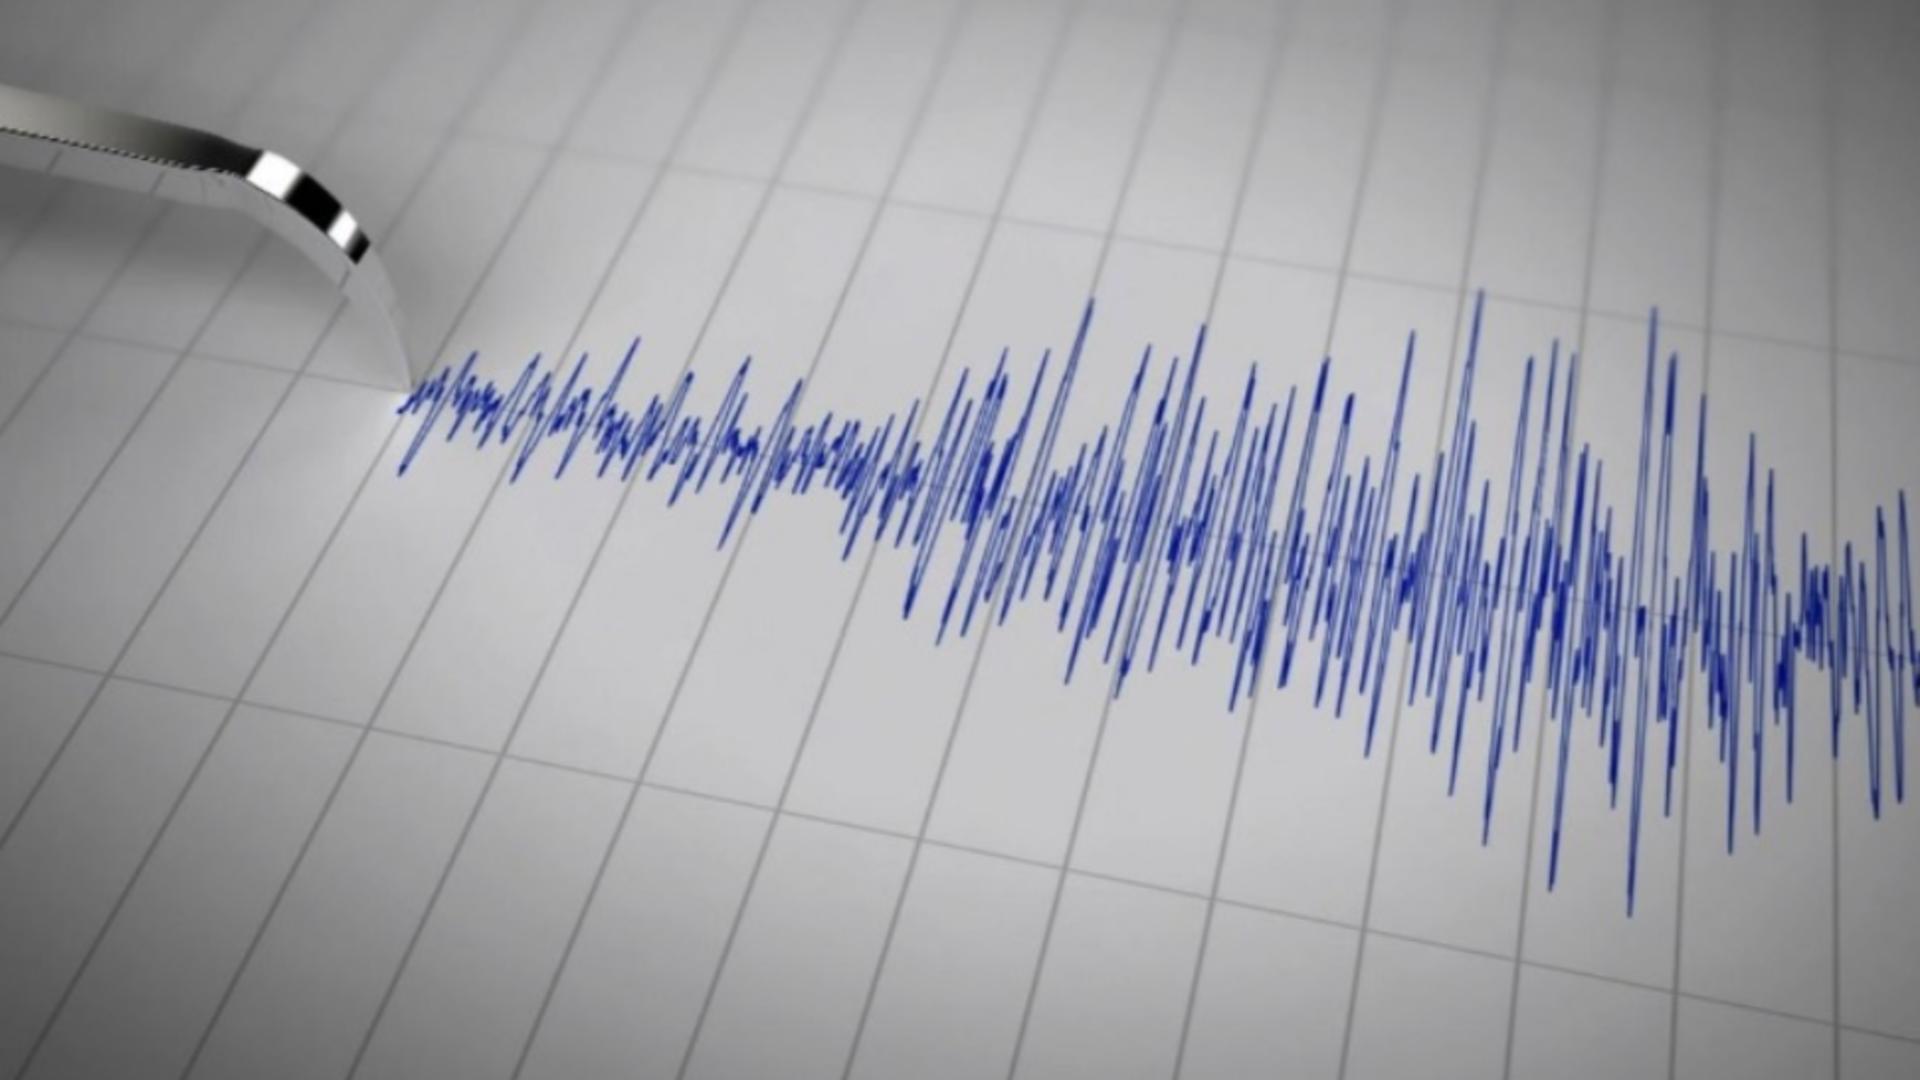 Un nou cutremur în zona Vrancea – Activitate seismică intensificată – Este al 4-lea cutremur în mai puțin de 24 de ore